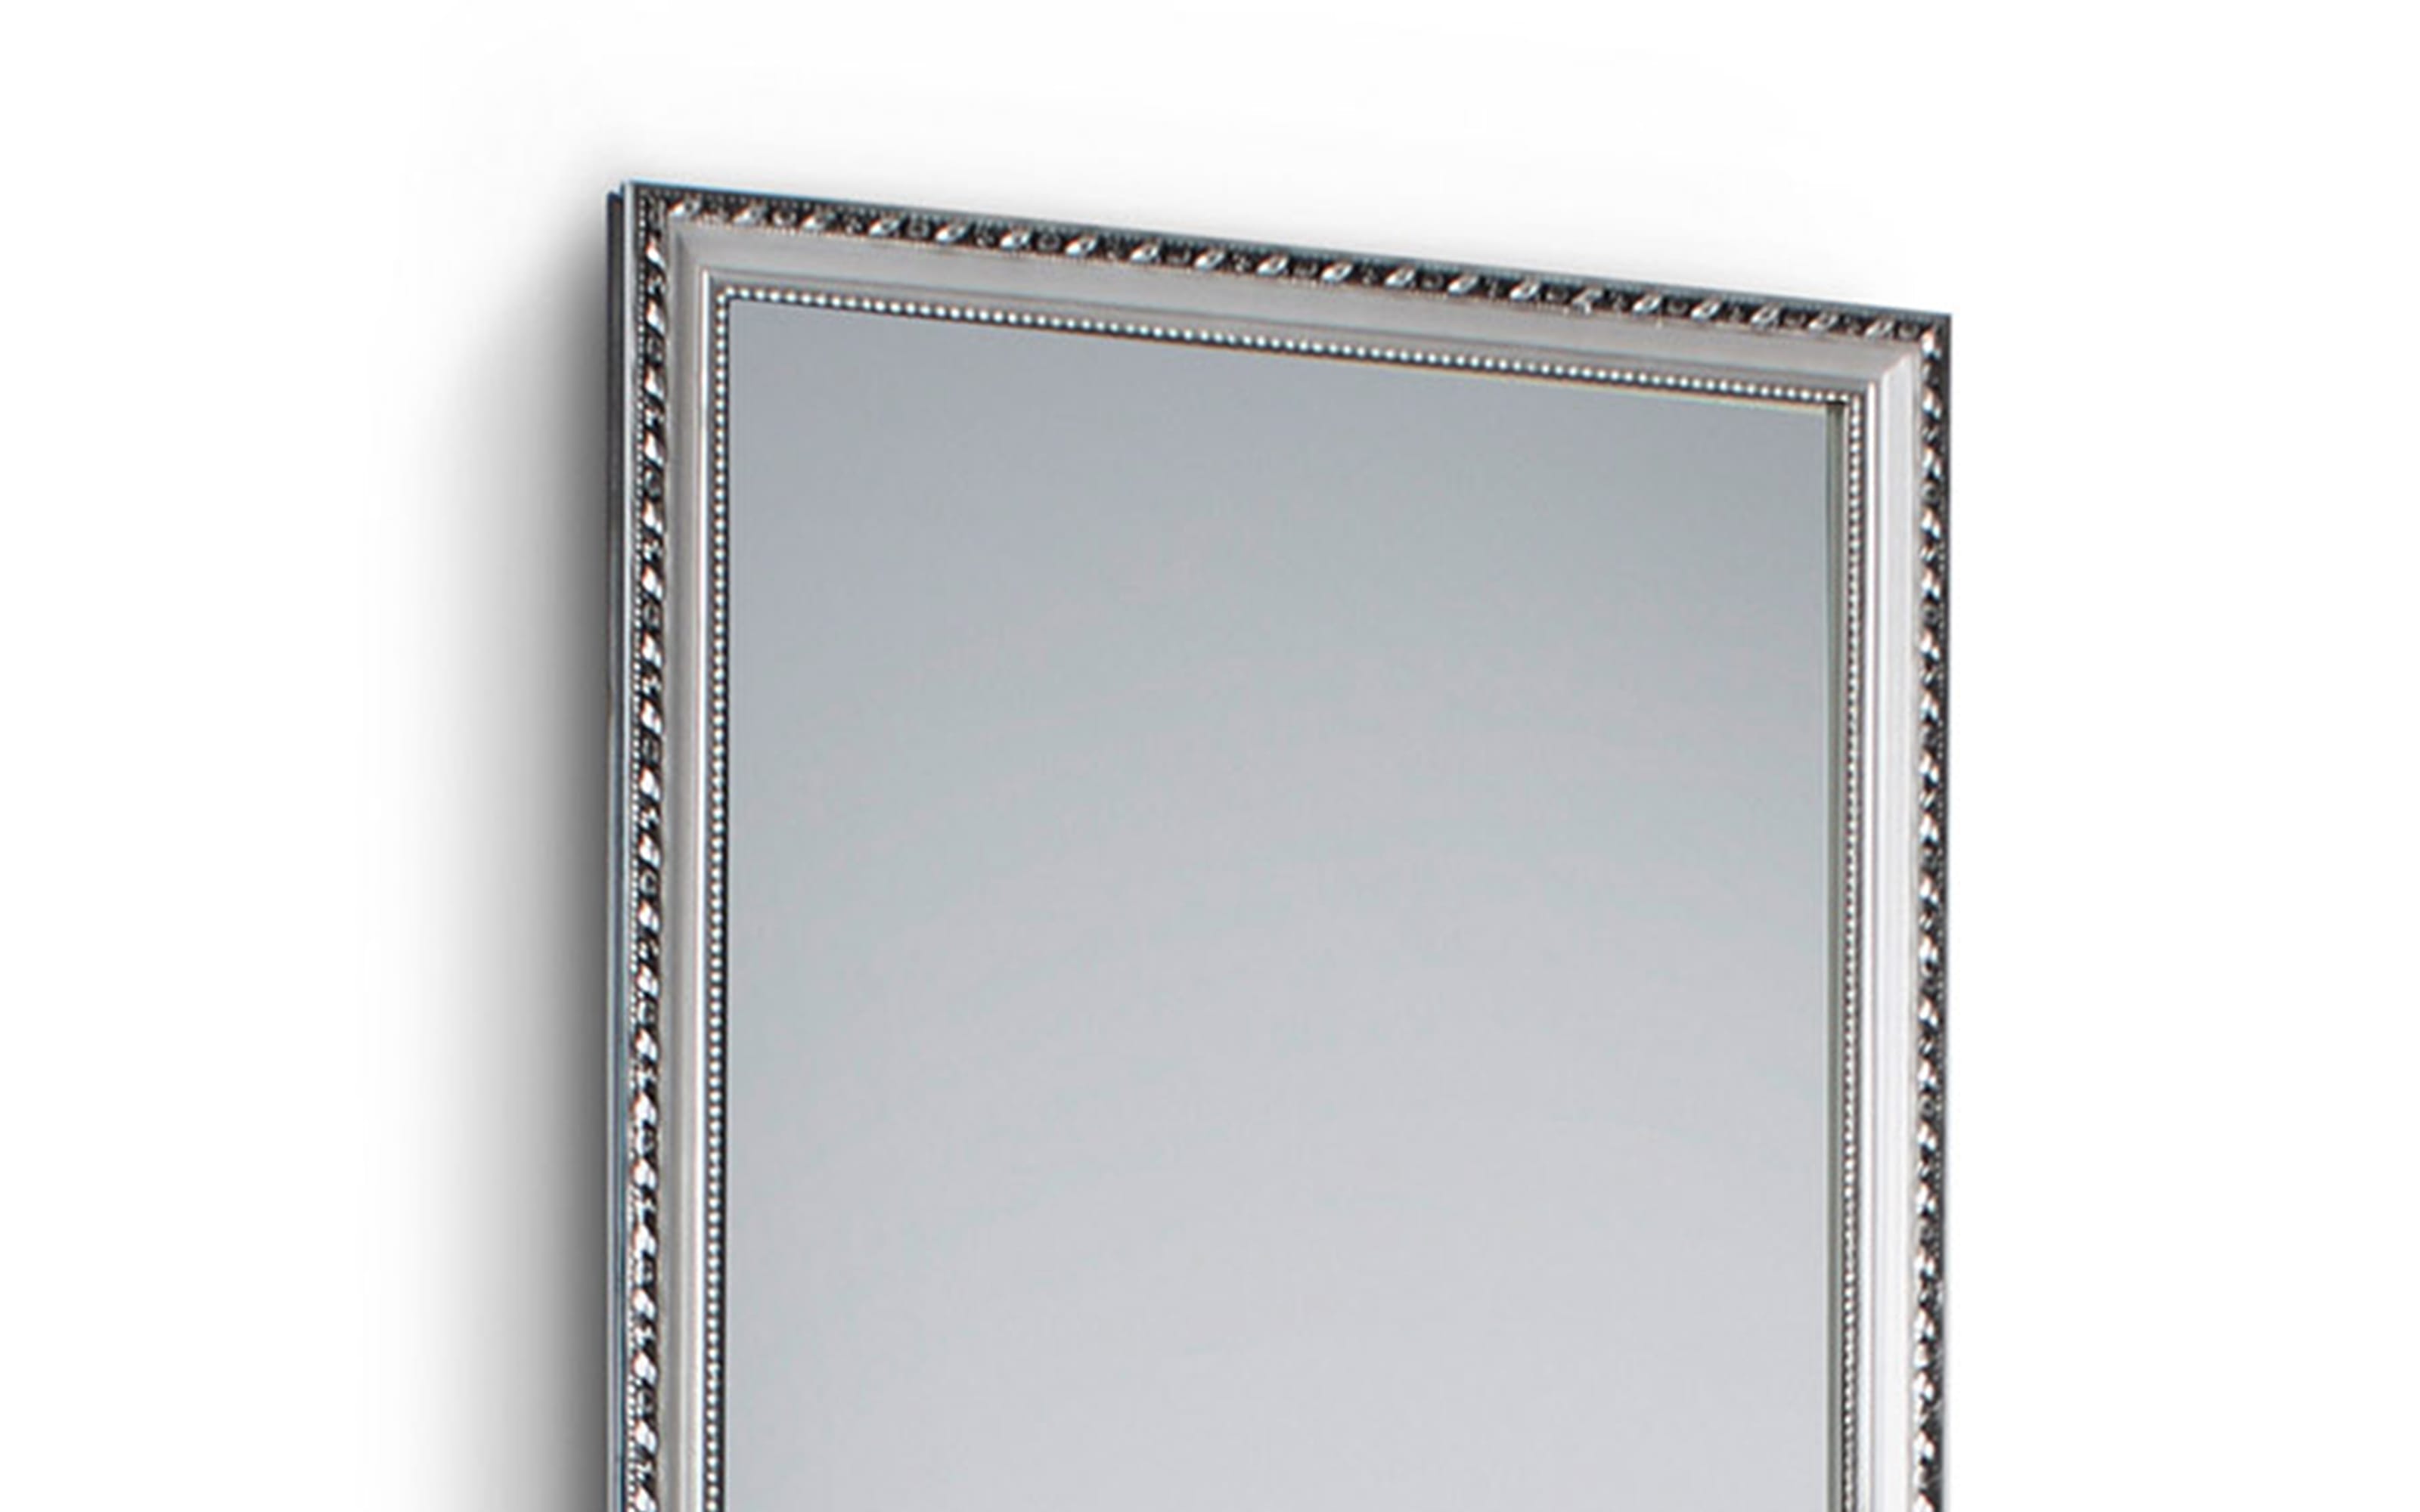 Rahmenspiegel Loreley, silberfarbig, 35 x 125 cm